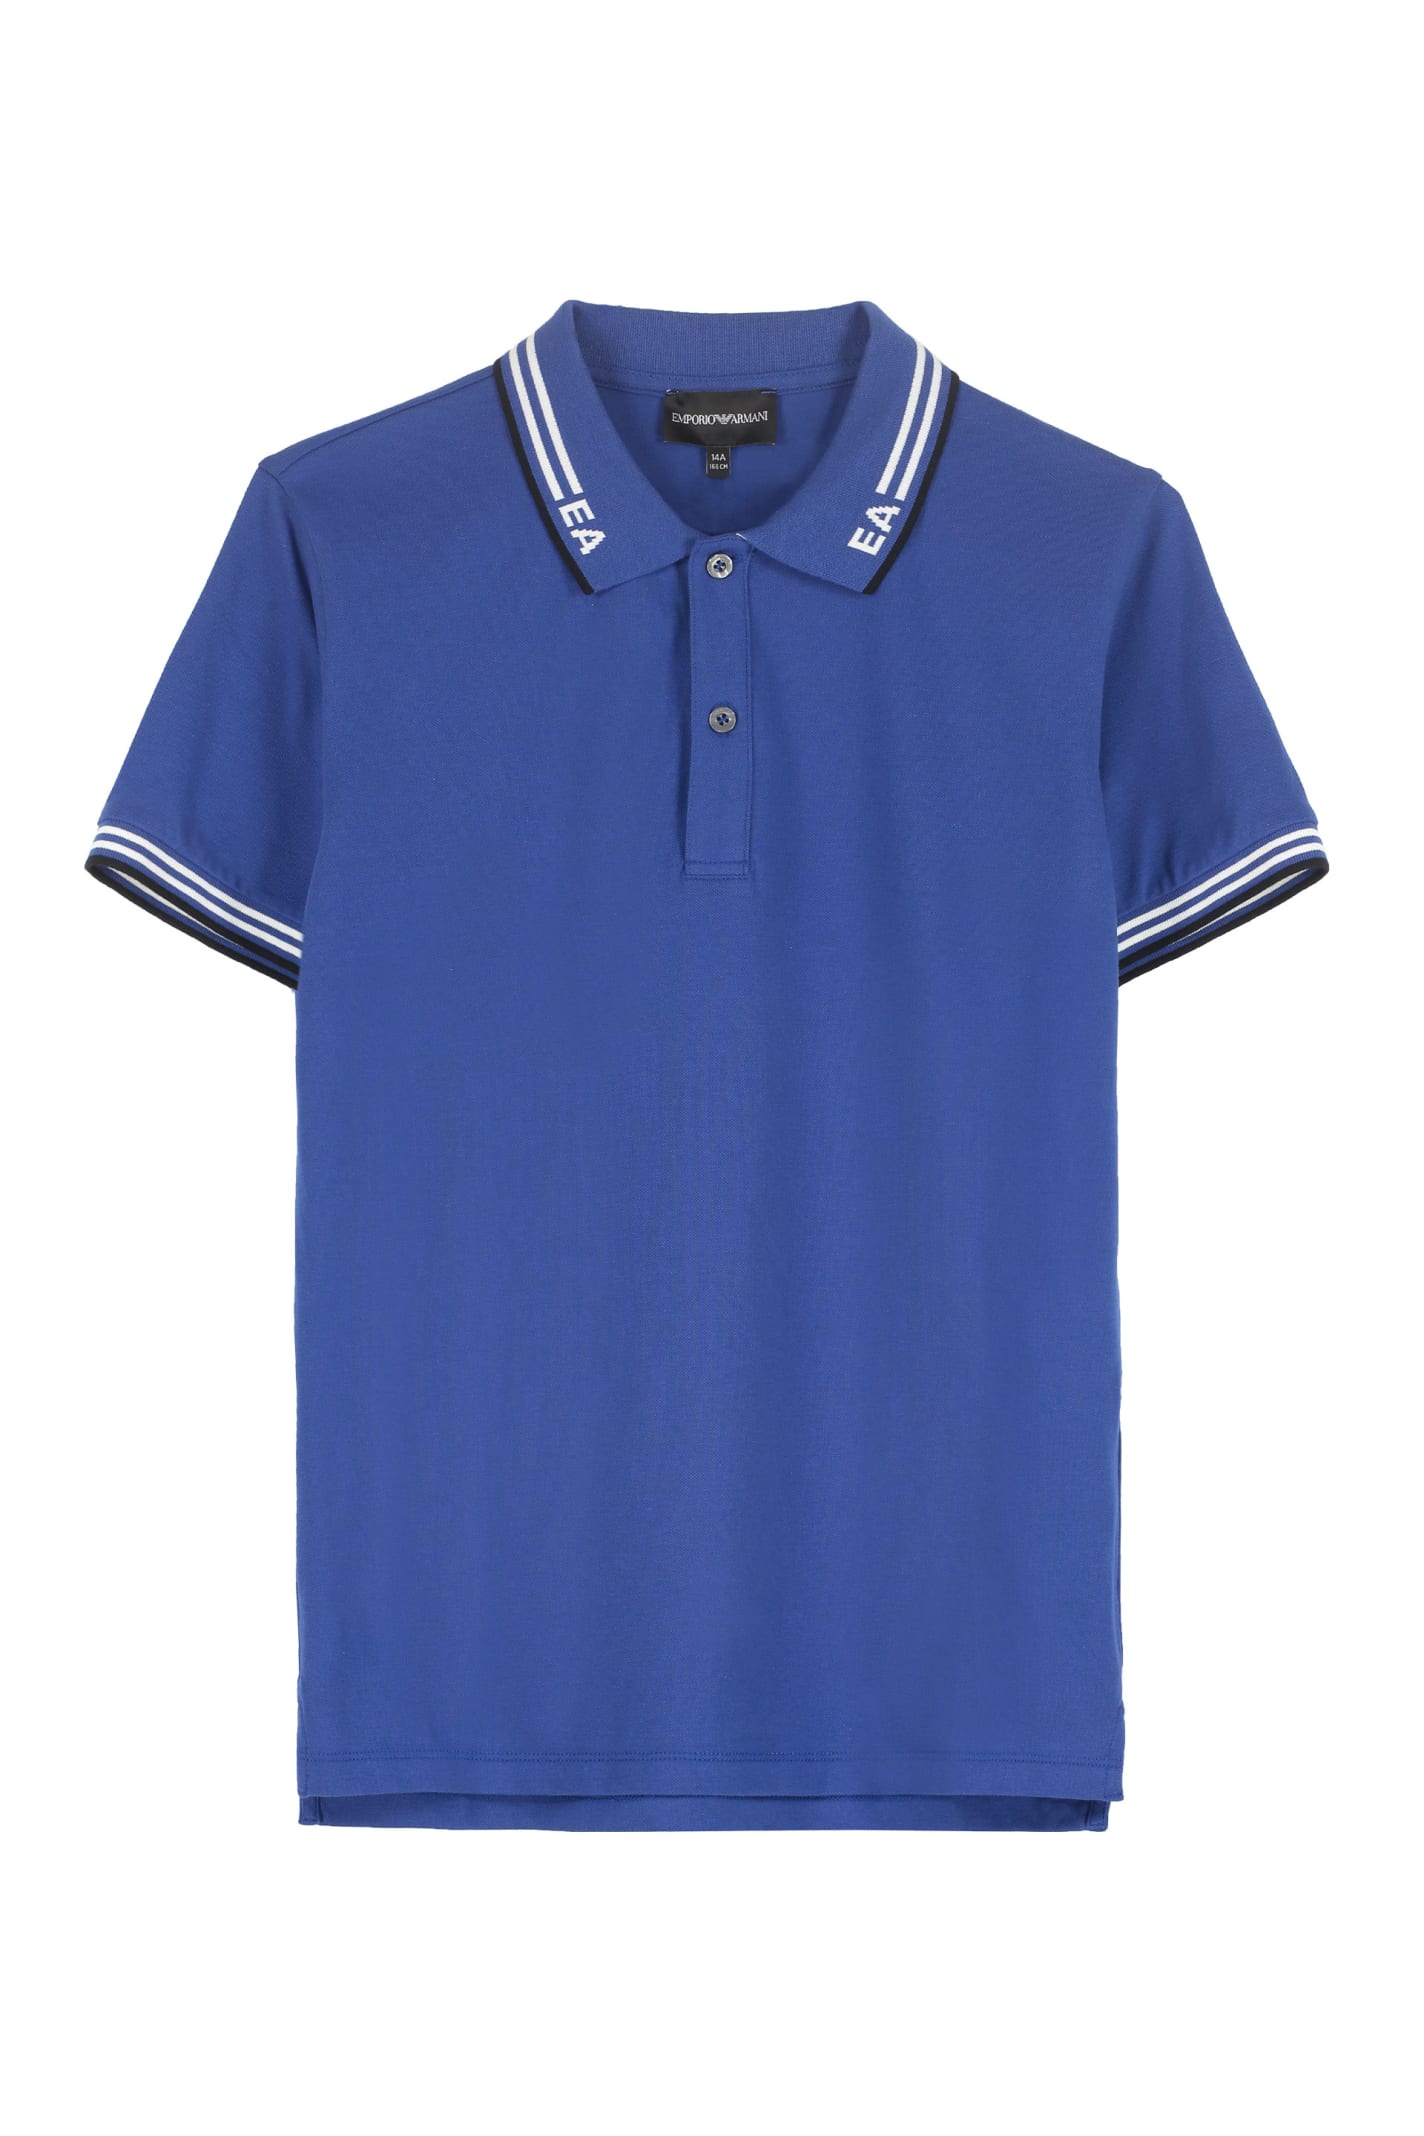 Emporio Armani Stretch Cotton Piqué Polo Shirt